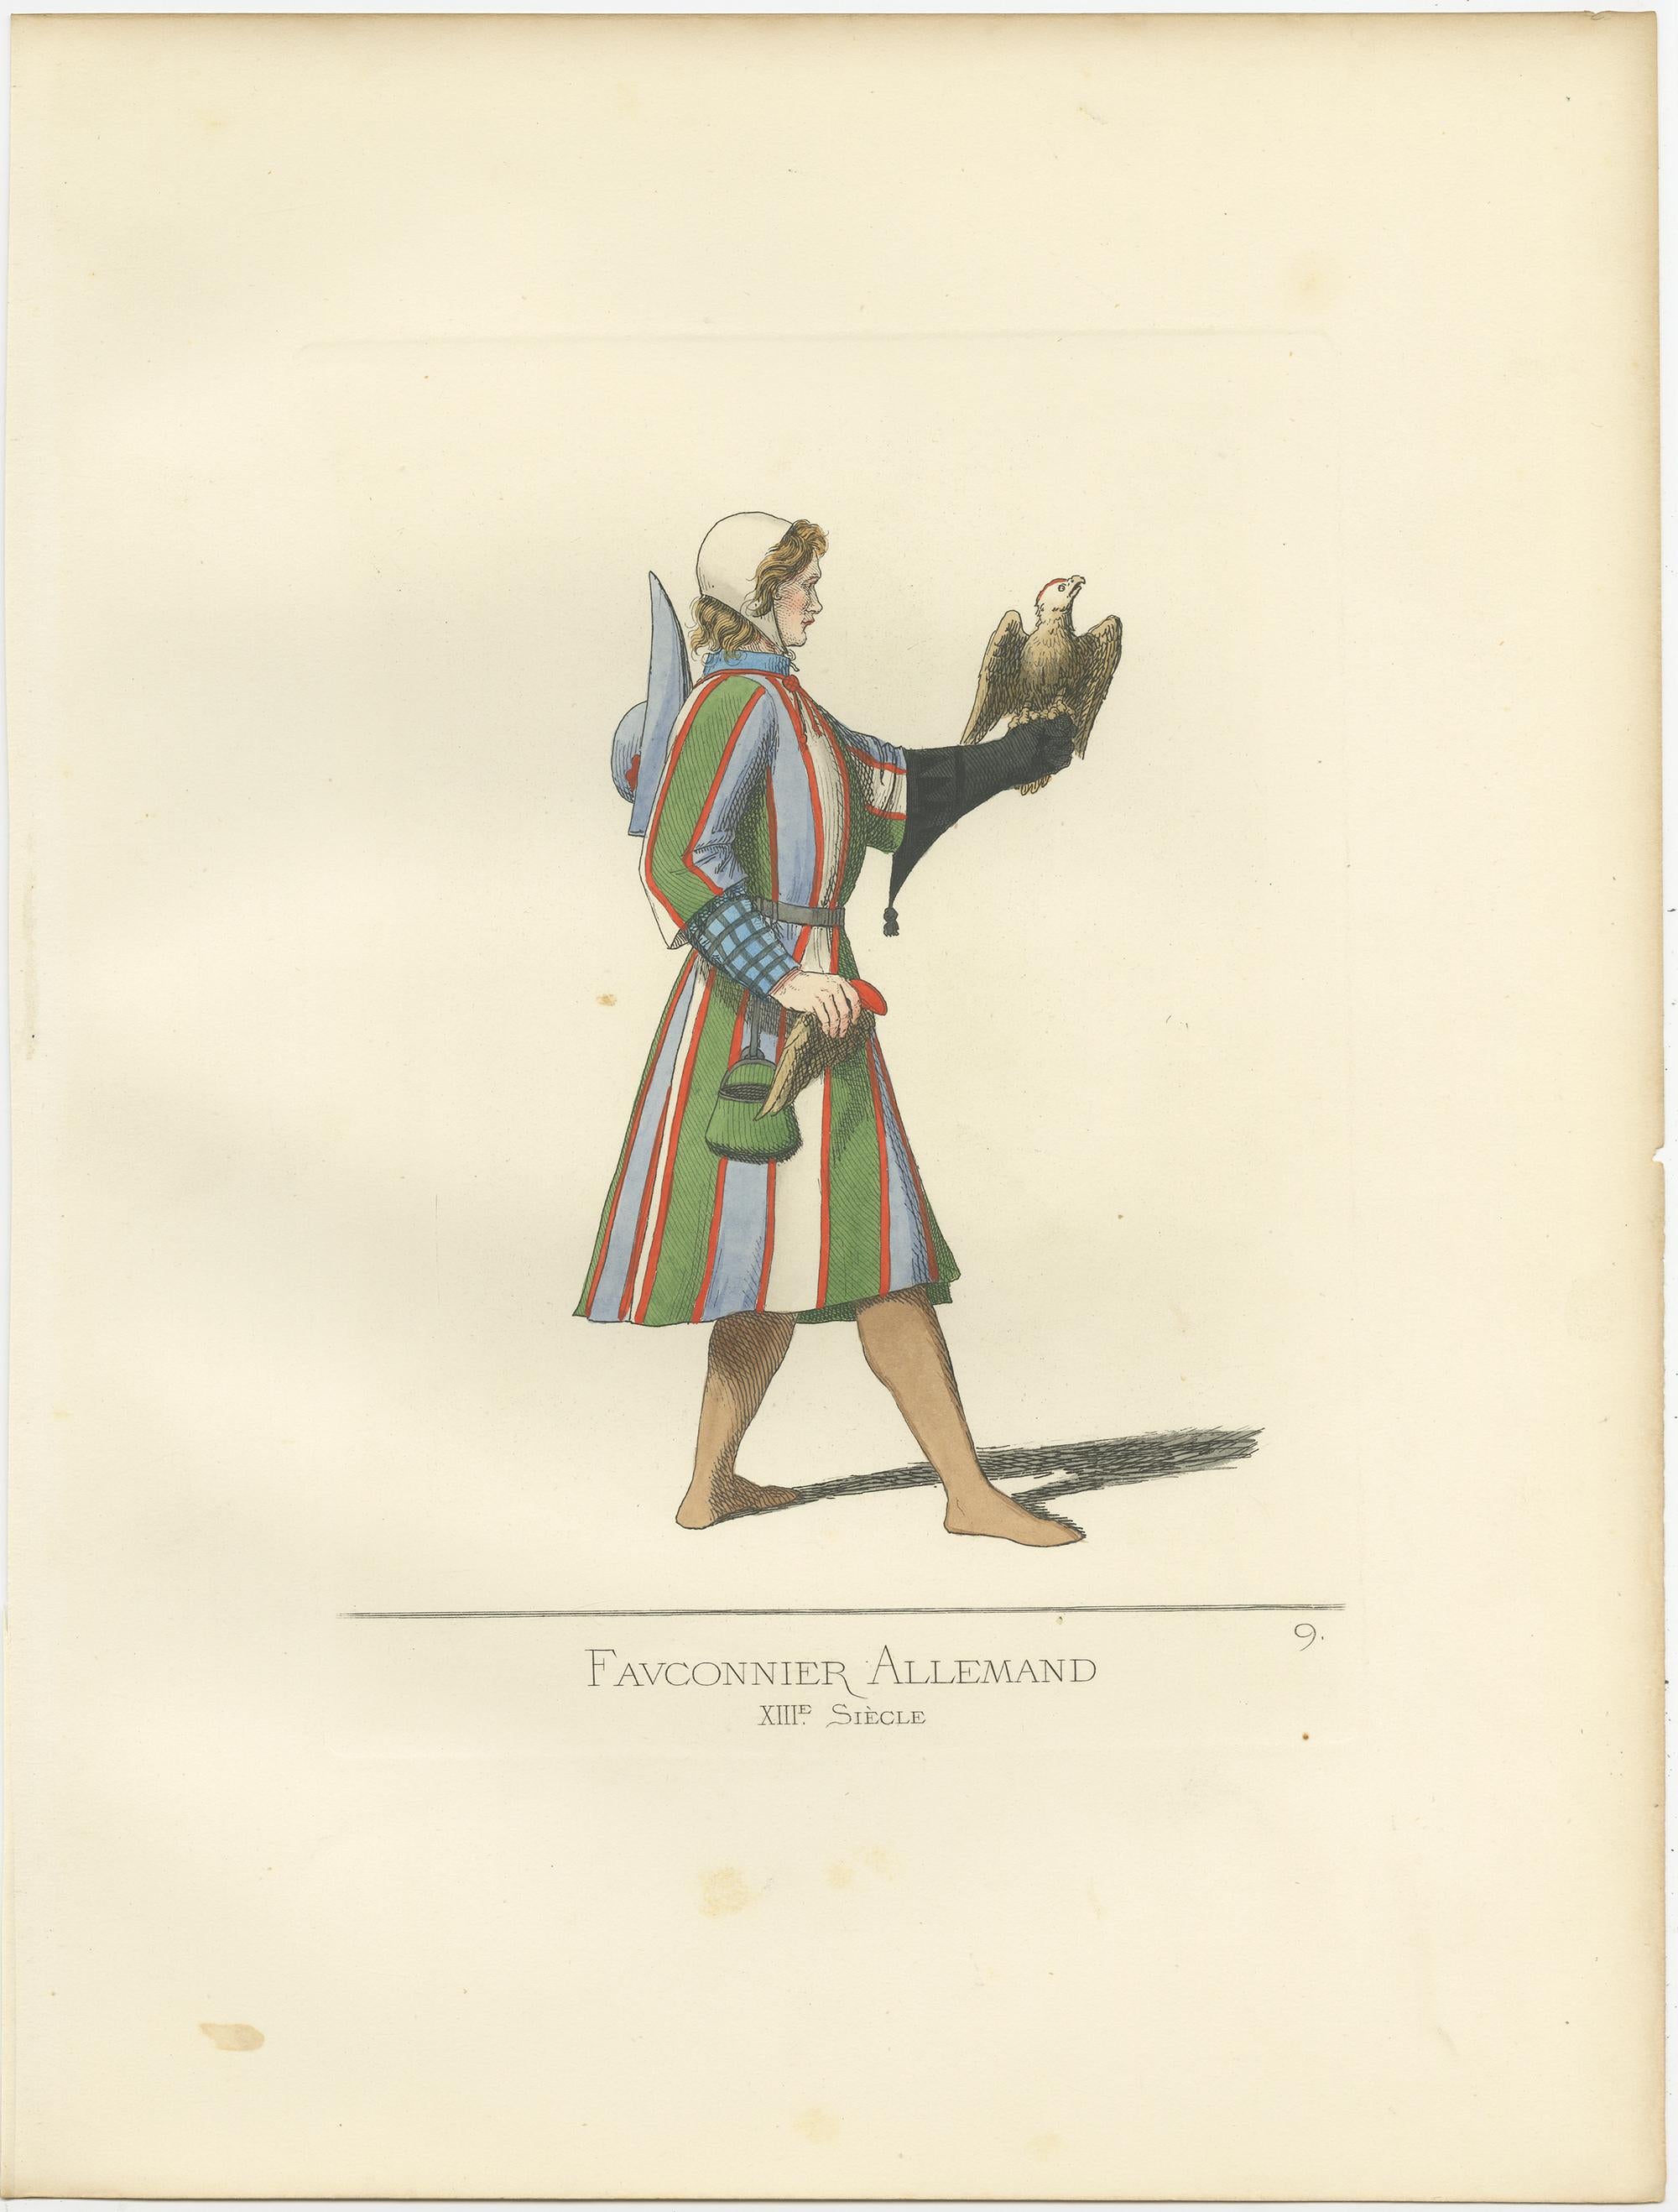 Antique print titled ‘Fauconnier Allemand, XIIIe Siecle.’ Original antique print of a German falconer. This print originates from 'Costumes historiques de femmes du XIII, XIV et XV siècle' by C. Bonnard. Published 1860.